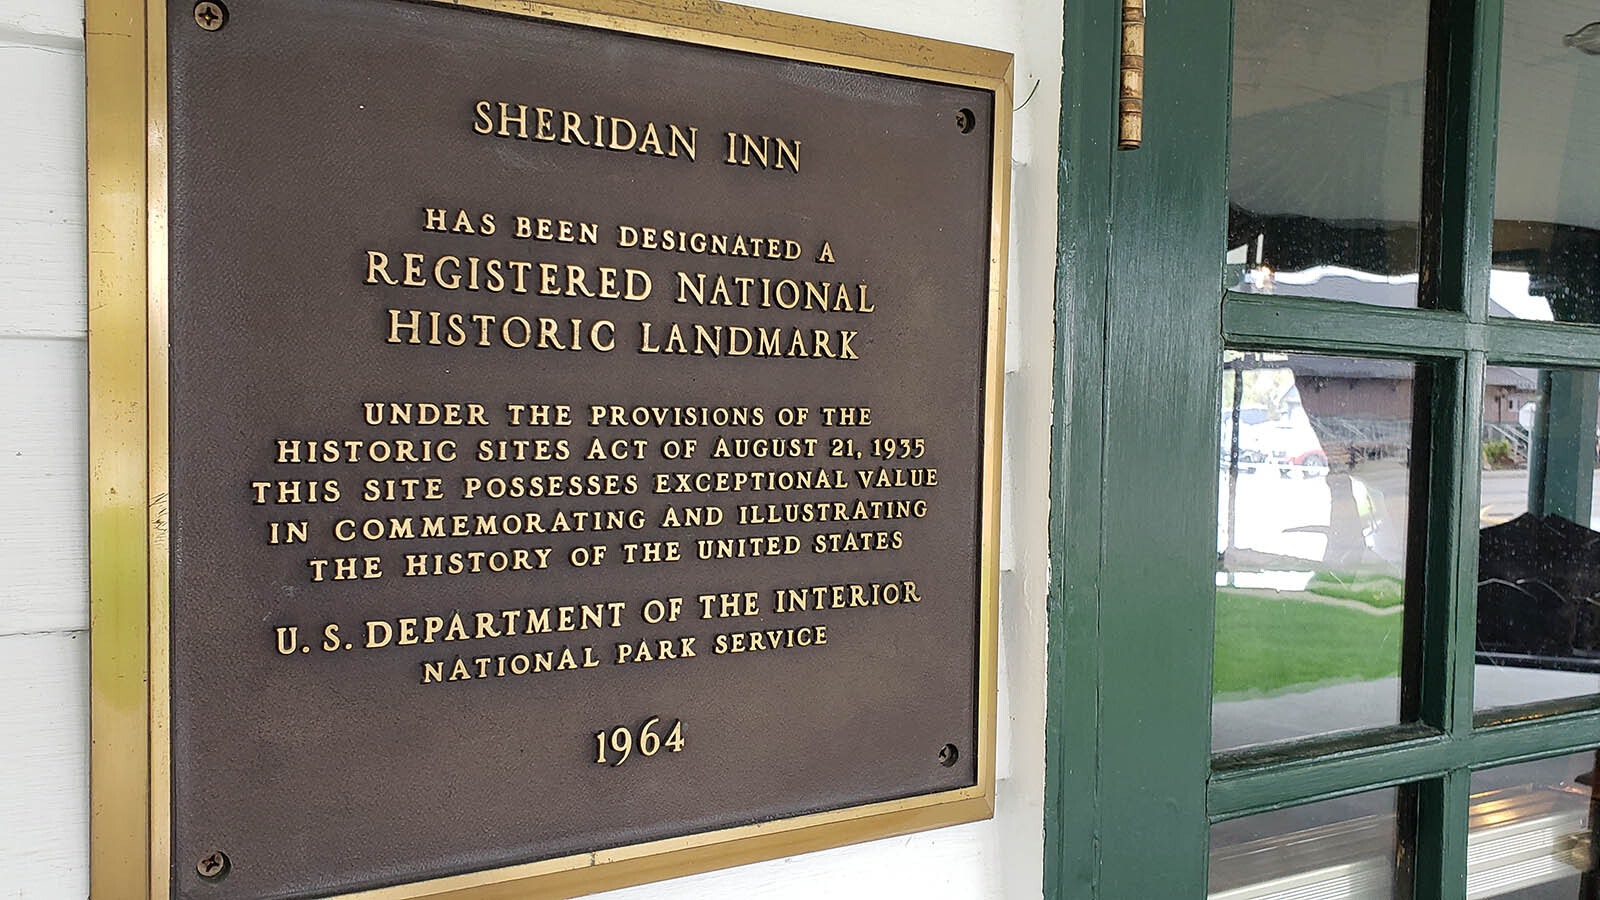 Sheridan Inn is a registered national historic landmark.